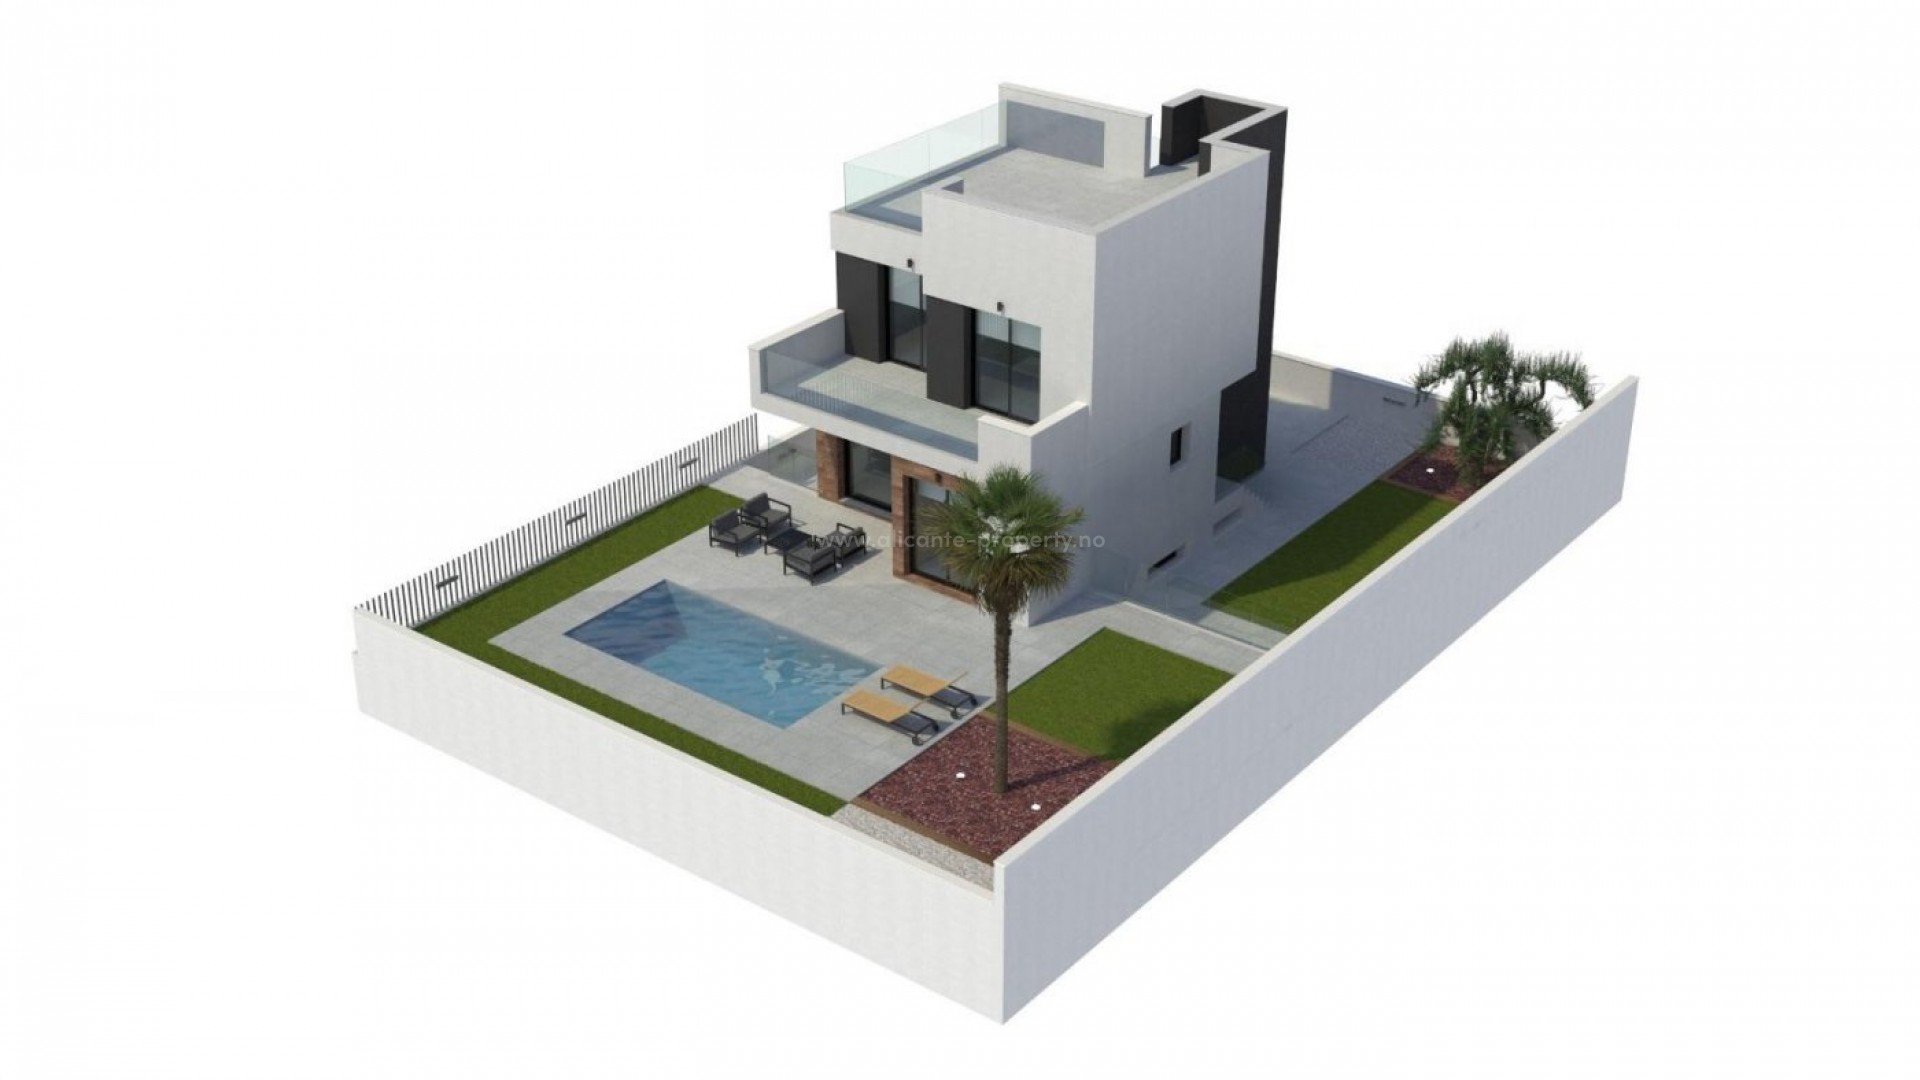 Nye hus/villaer i La Nucia nær Benidorm, 3 store soverom, 4 bad, privat basseng, terrasse, solarium og egen garasje for 2 biler,